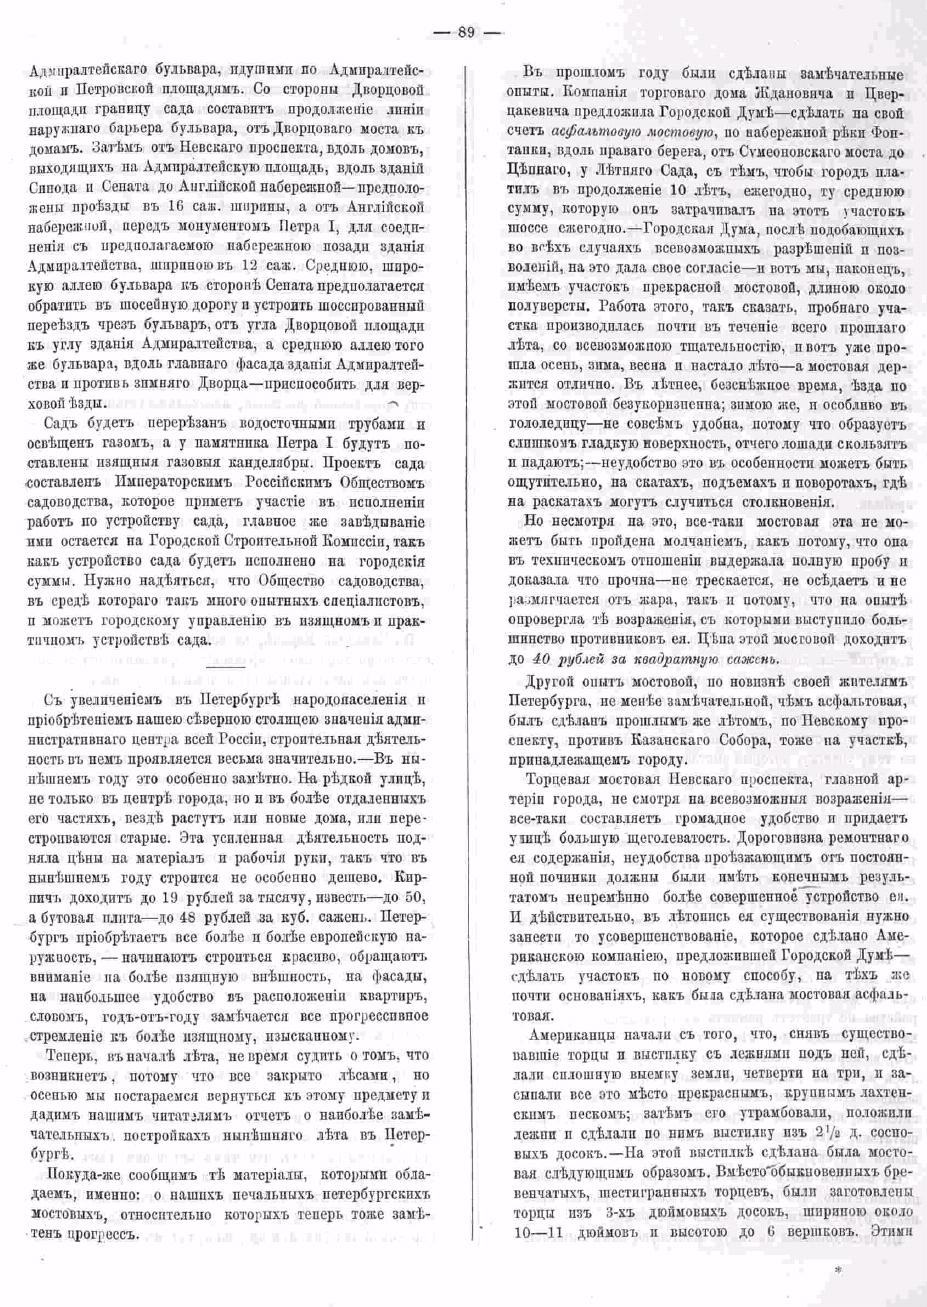 О Петербургских мостовых. Зодчий, 1872, 6, стр. 89